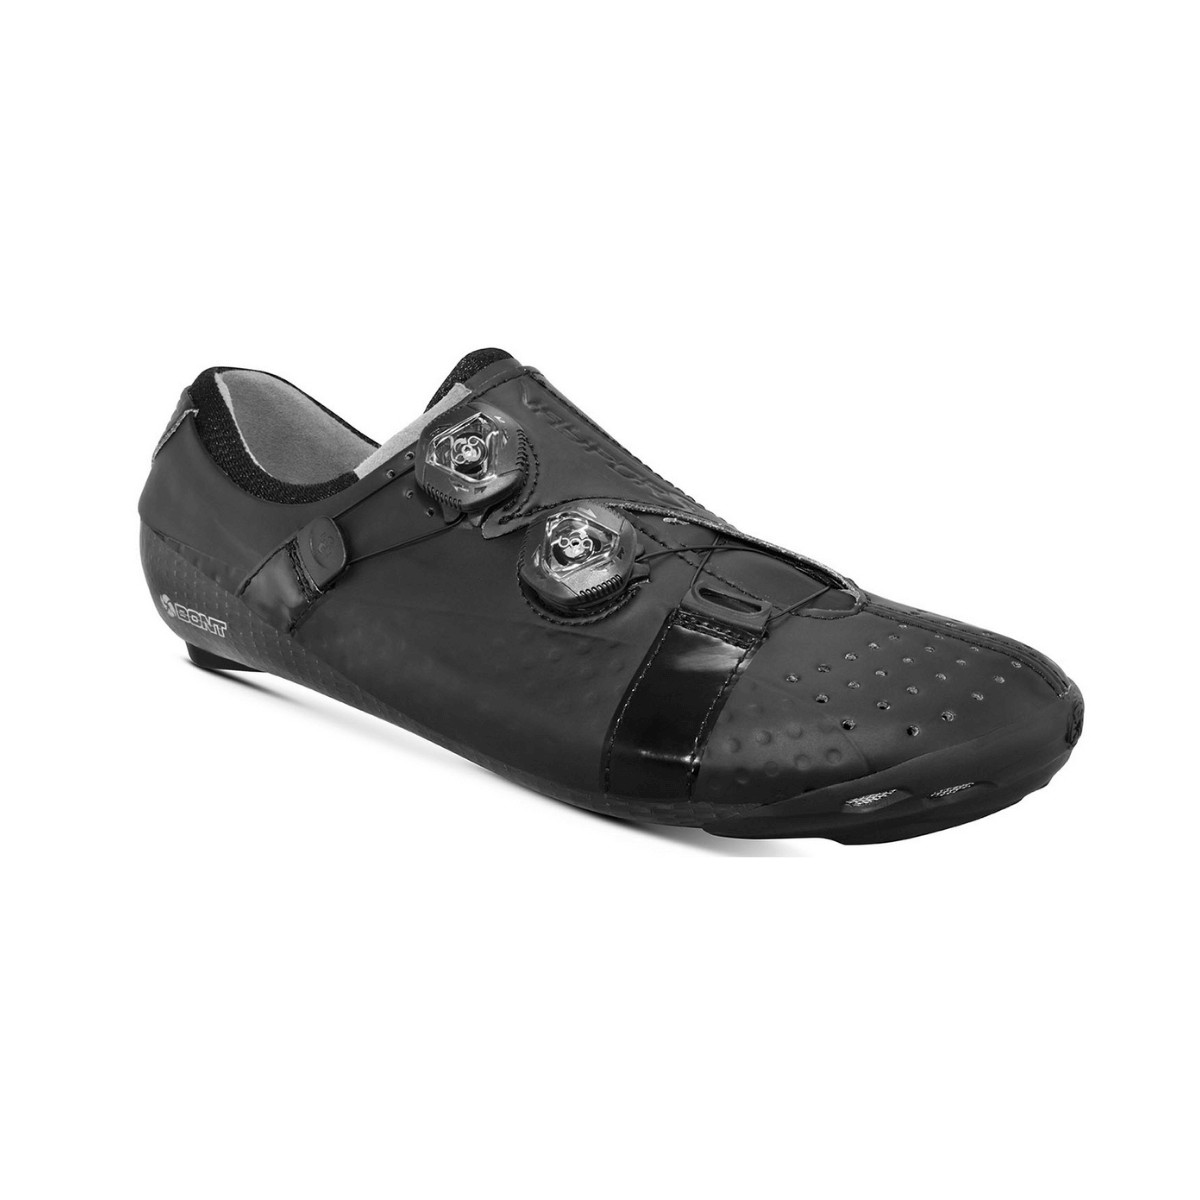 Bont Vaypor S Shoes Matte black, Size 44,5 - EUR